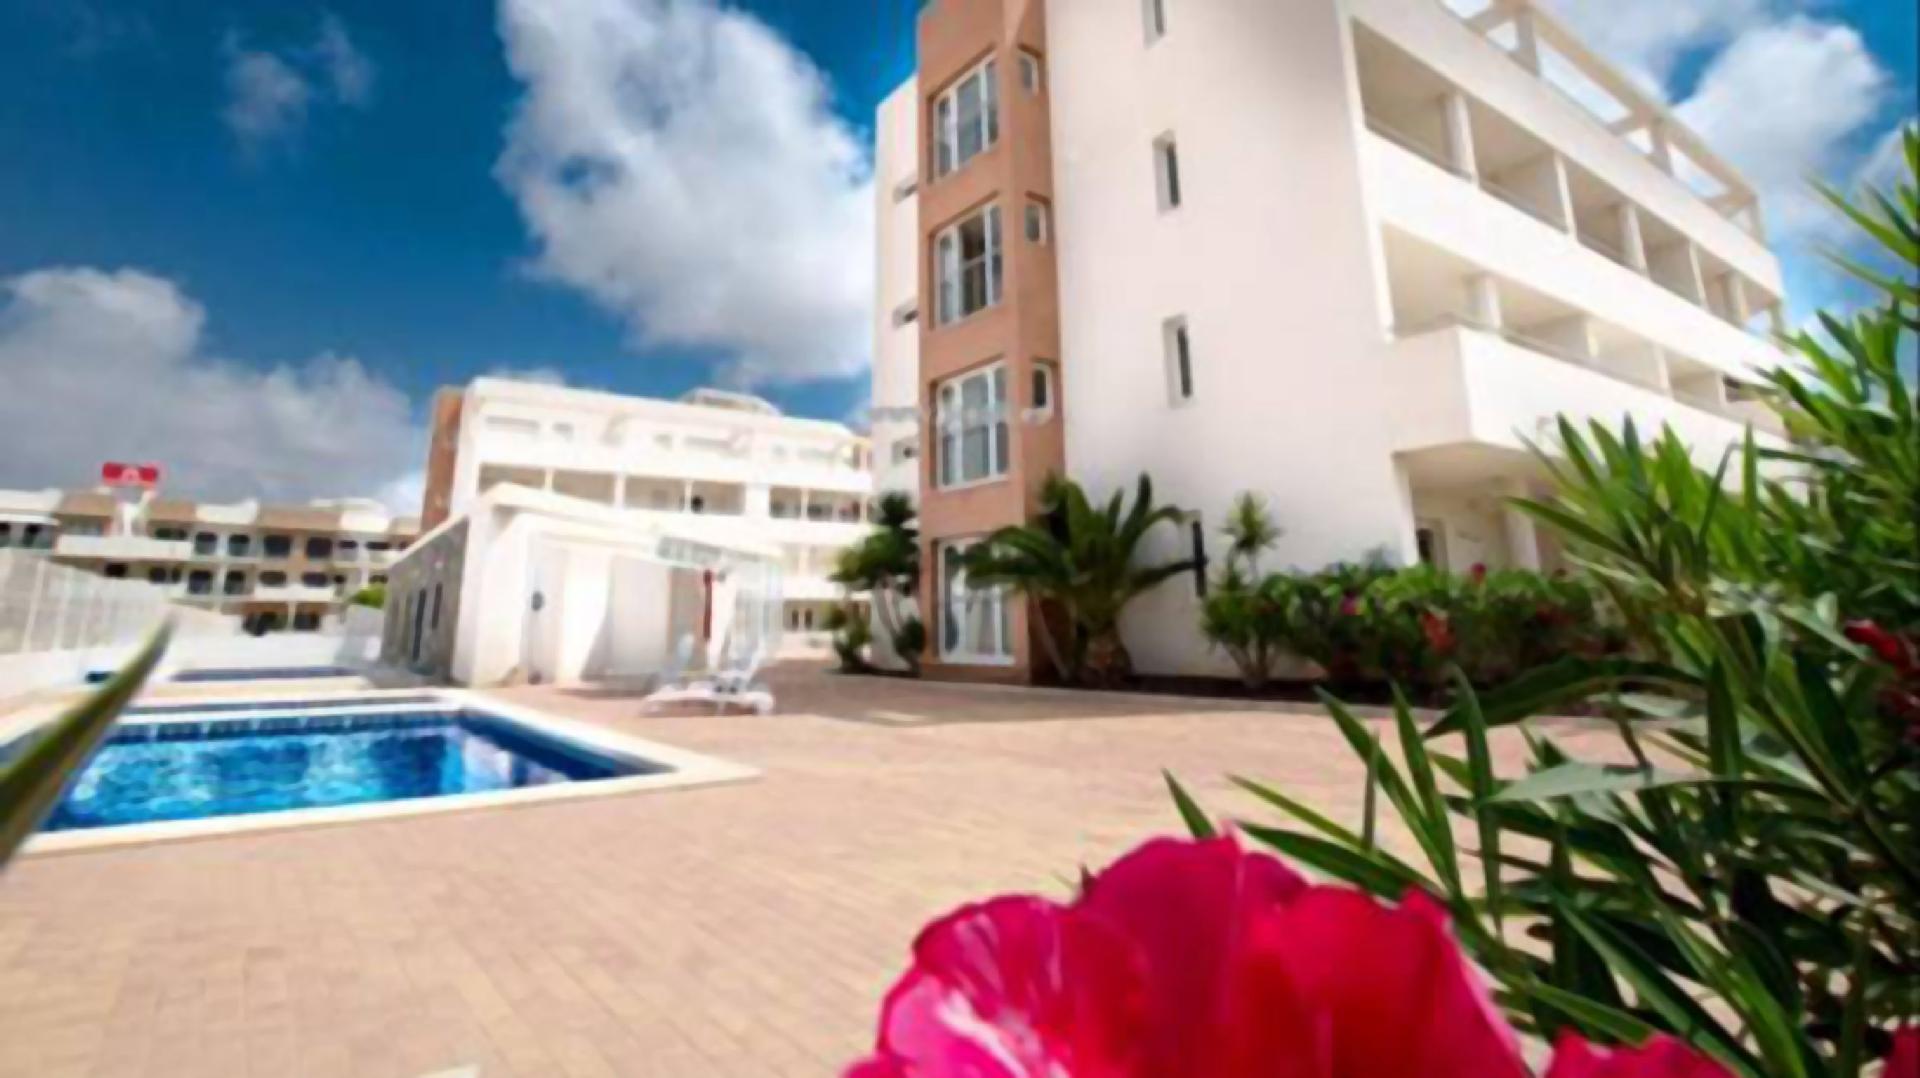 Ferienwohnung für 4 Personen ca. 80 m² i Ferienwohnung in Spanien